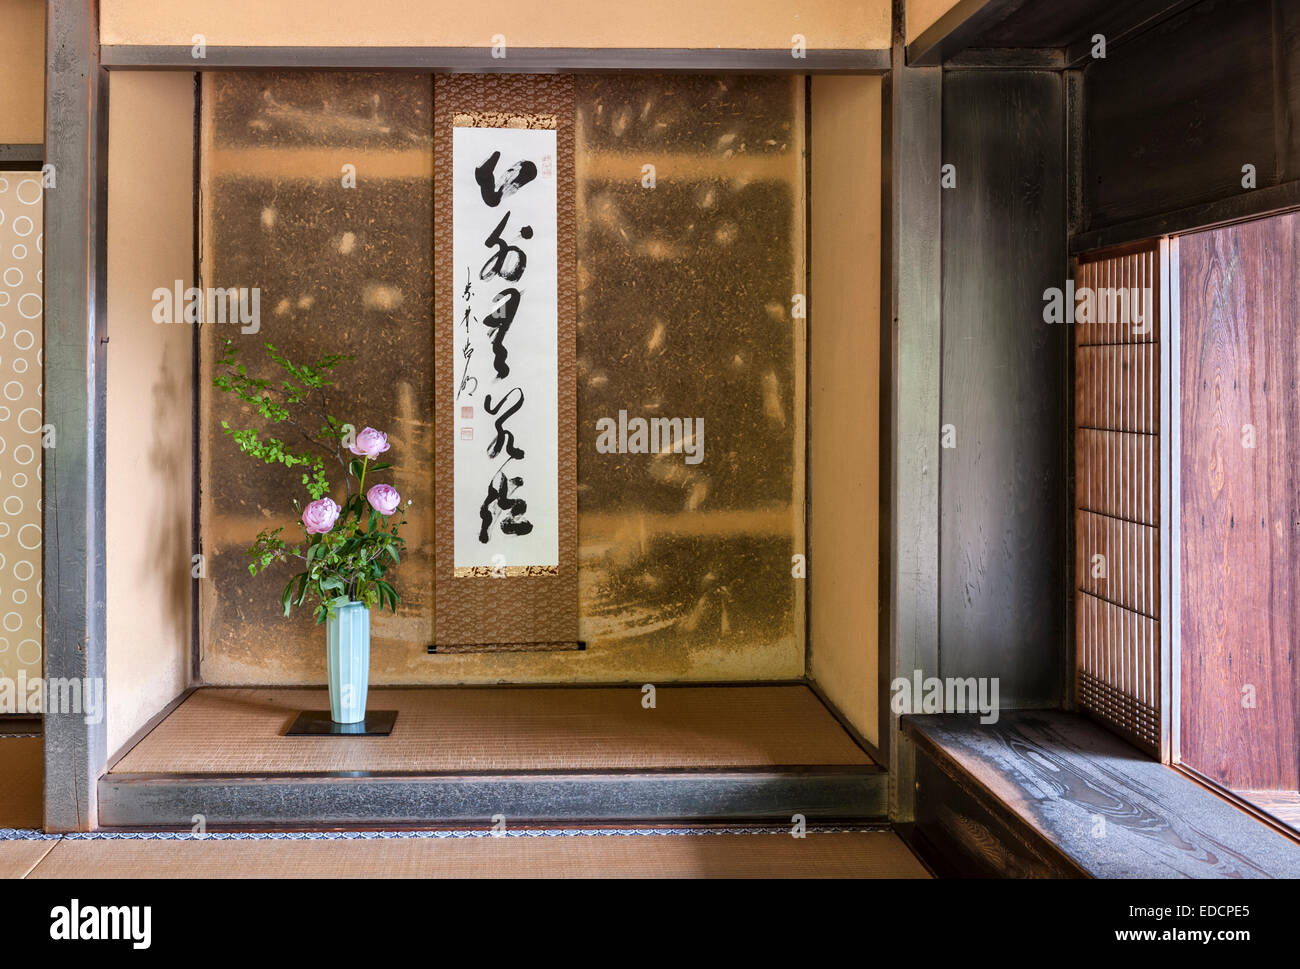 Intérieur du temple bouddhiste zen Jiko-in, Nara, Japon. L'alcôve ou tokonoma, avec un arrangement de pivoines pour représenter la saison (début de l'été) Banque D'Images